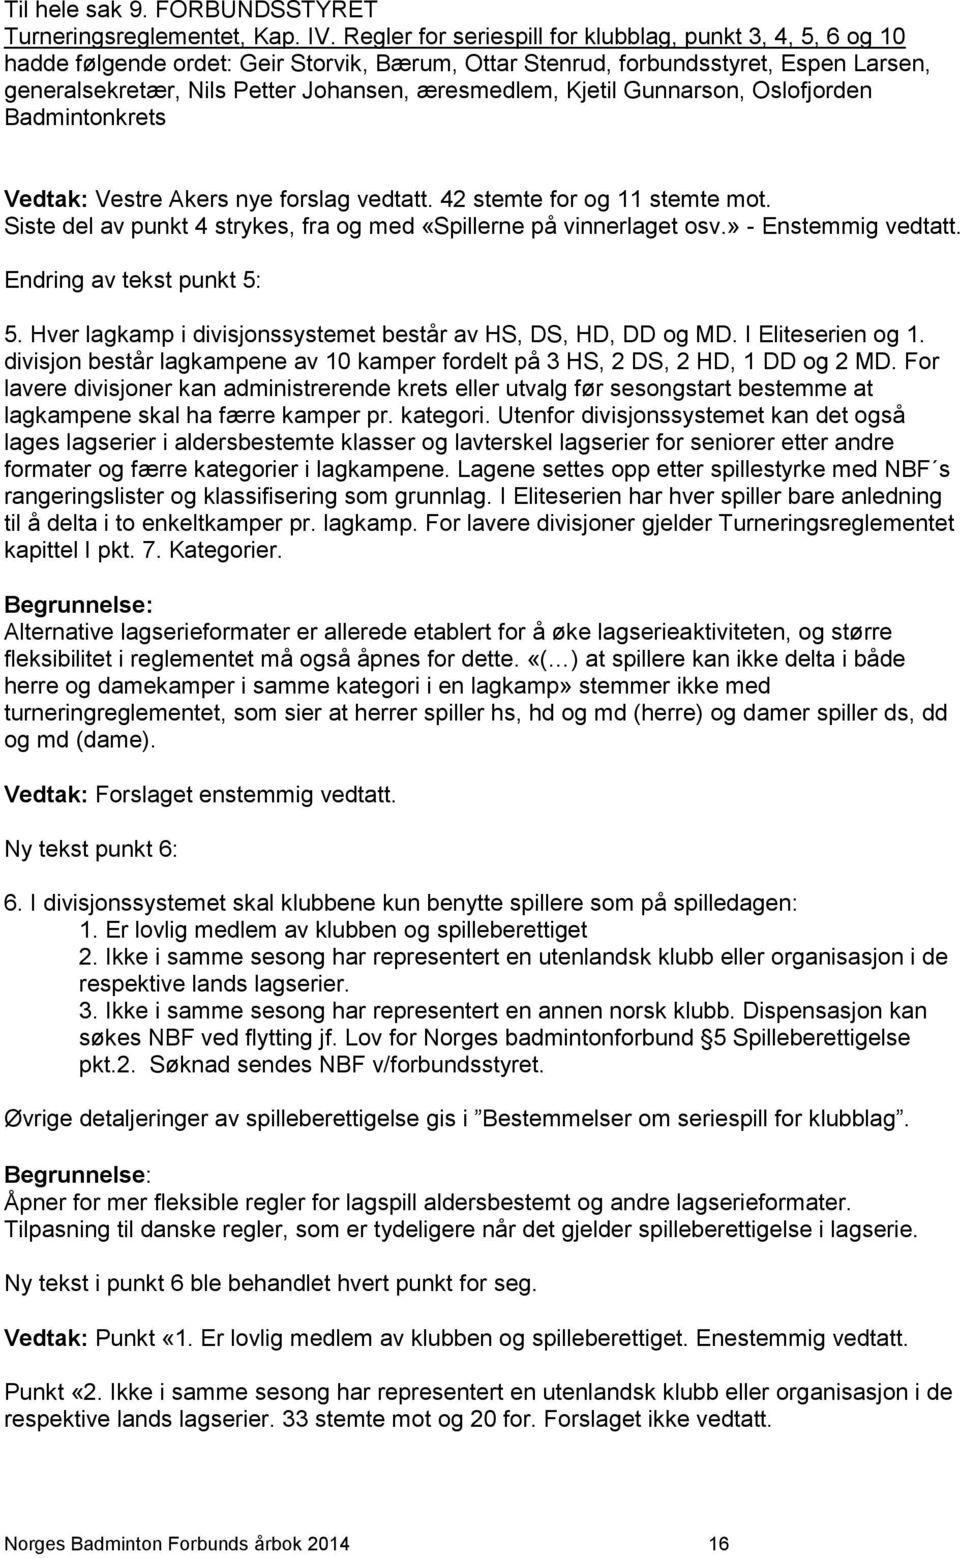 Kjetil Gunnarson, Oslofjorden Badmintonkrets Vedtak: Vestre Akers nye forslag vedtatt. 42 stemte for og 11 stemte mot. Siste del av punkt 4 strykes, fra og med «Spillerne på vinnerlaget osv.